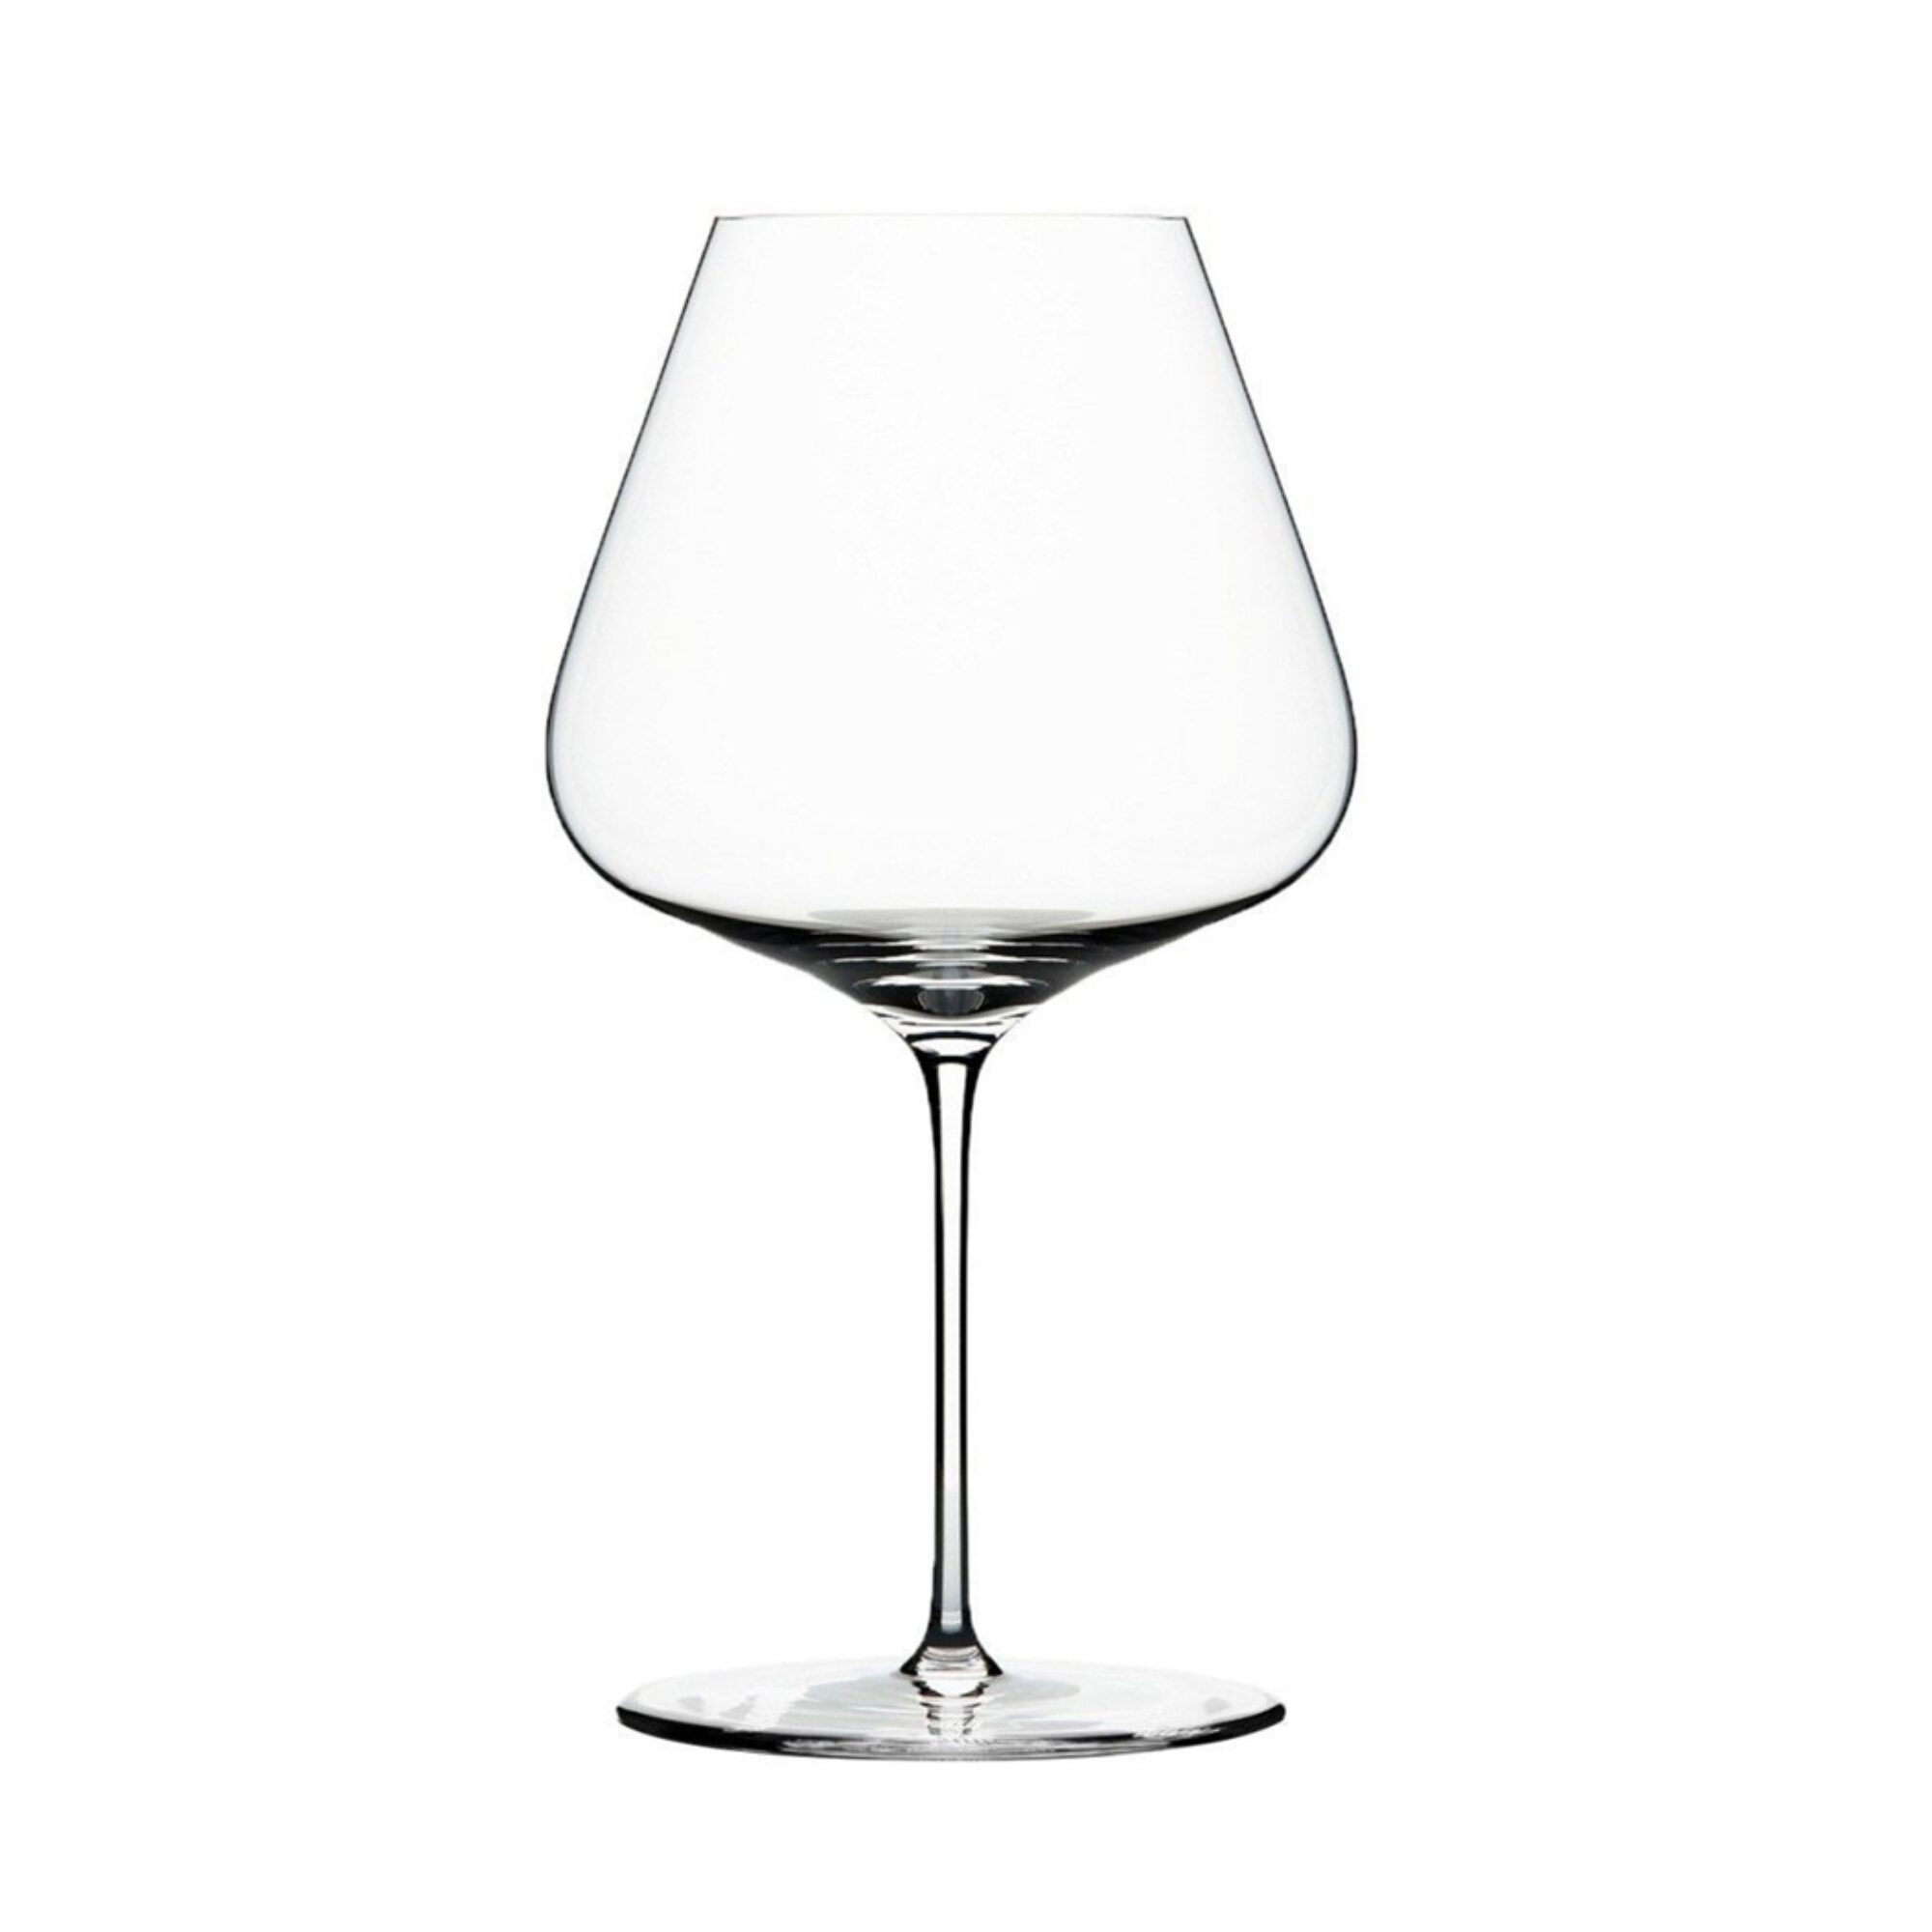 aanplakbiljet Franje Aan de overkant Roels wijnimport bvba | Zalto Bourgogne glas